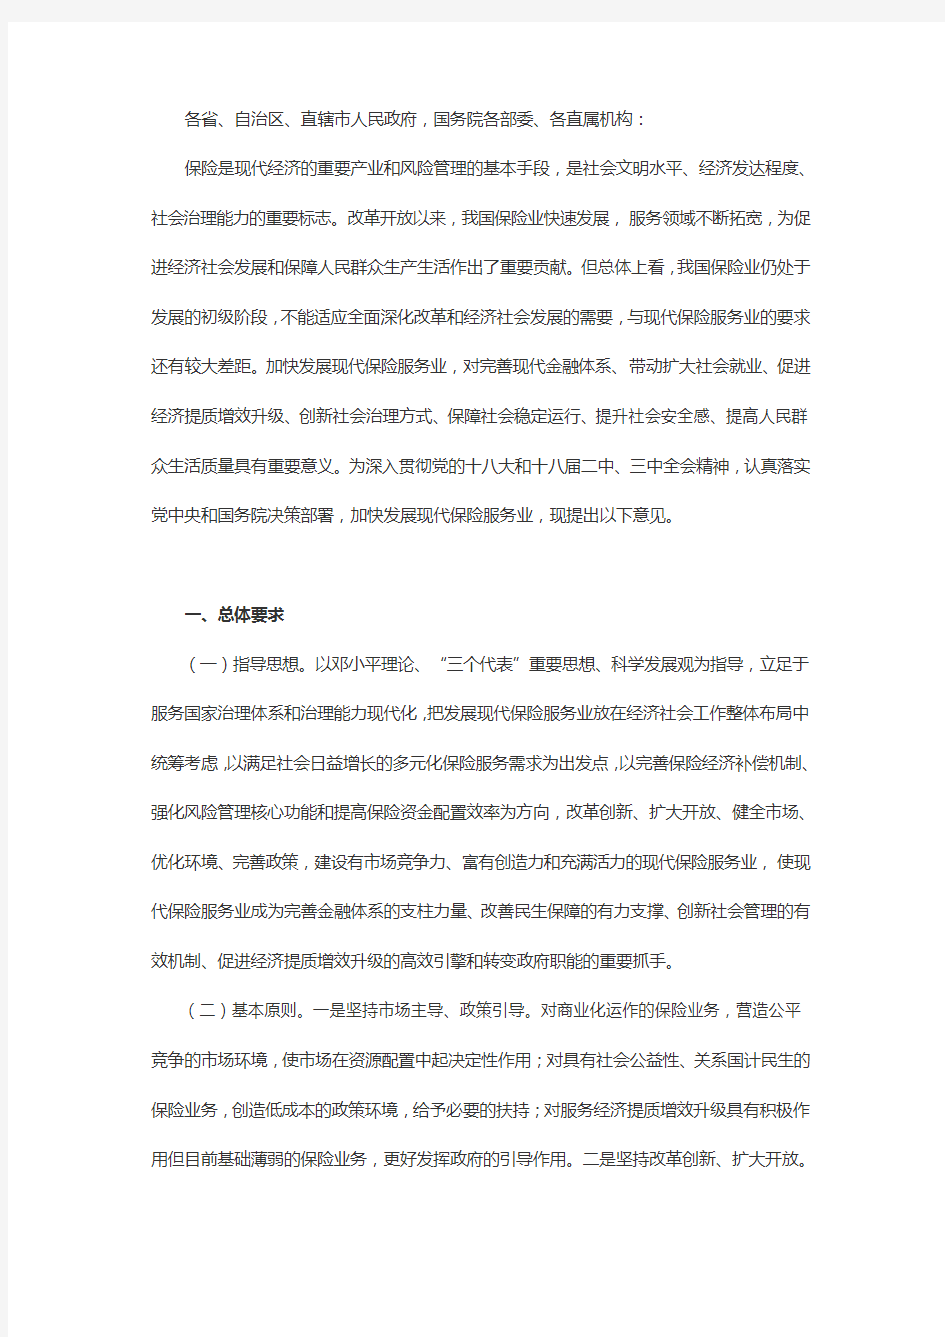 保险业新国十条全文-2014.10